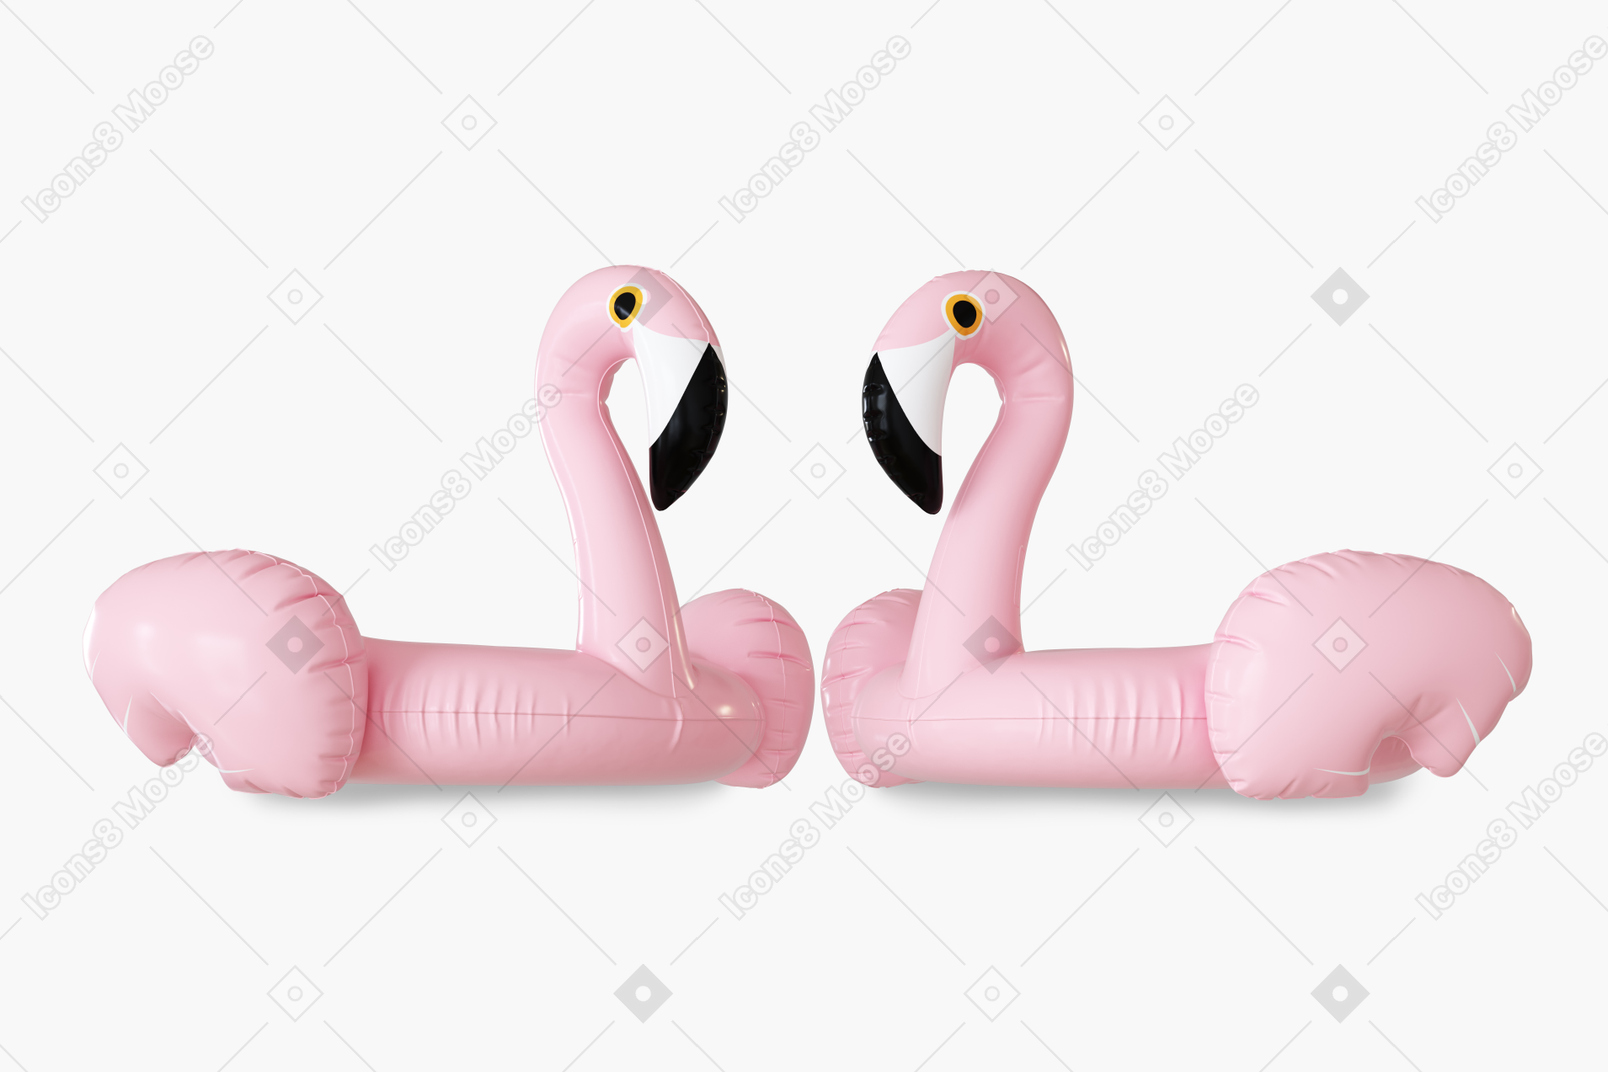 Dos anillos de goma flamingo sobre fondo blanco.